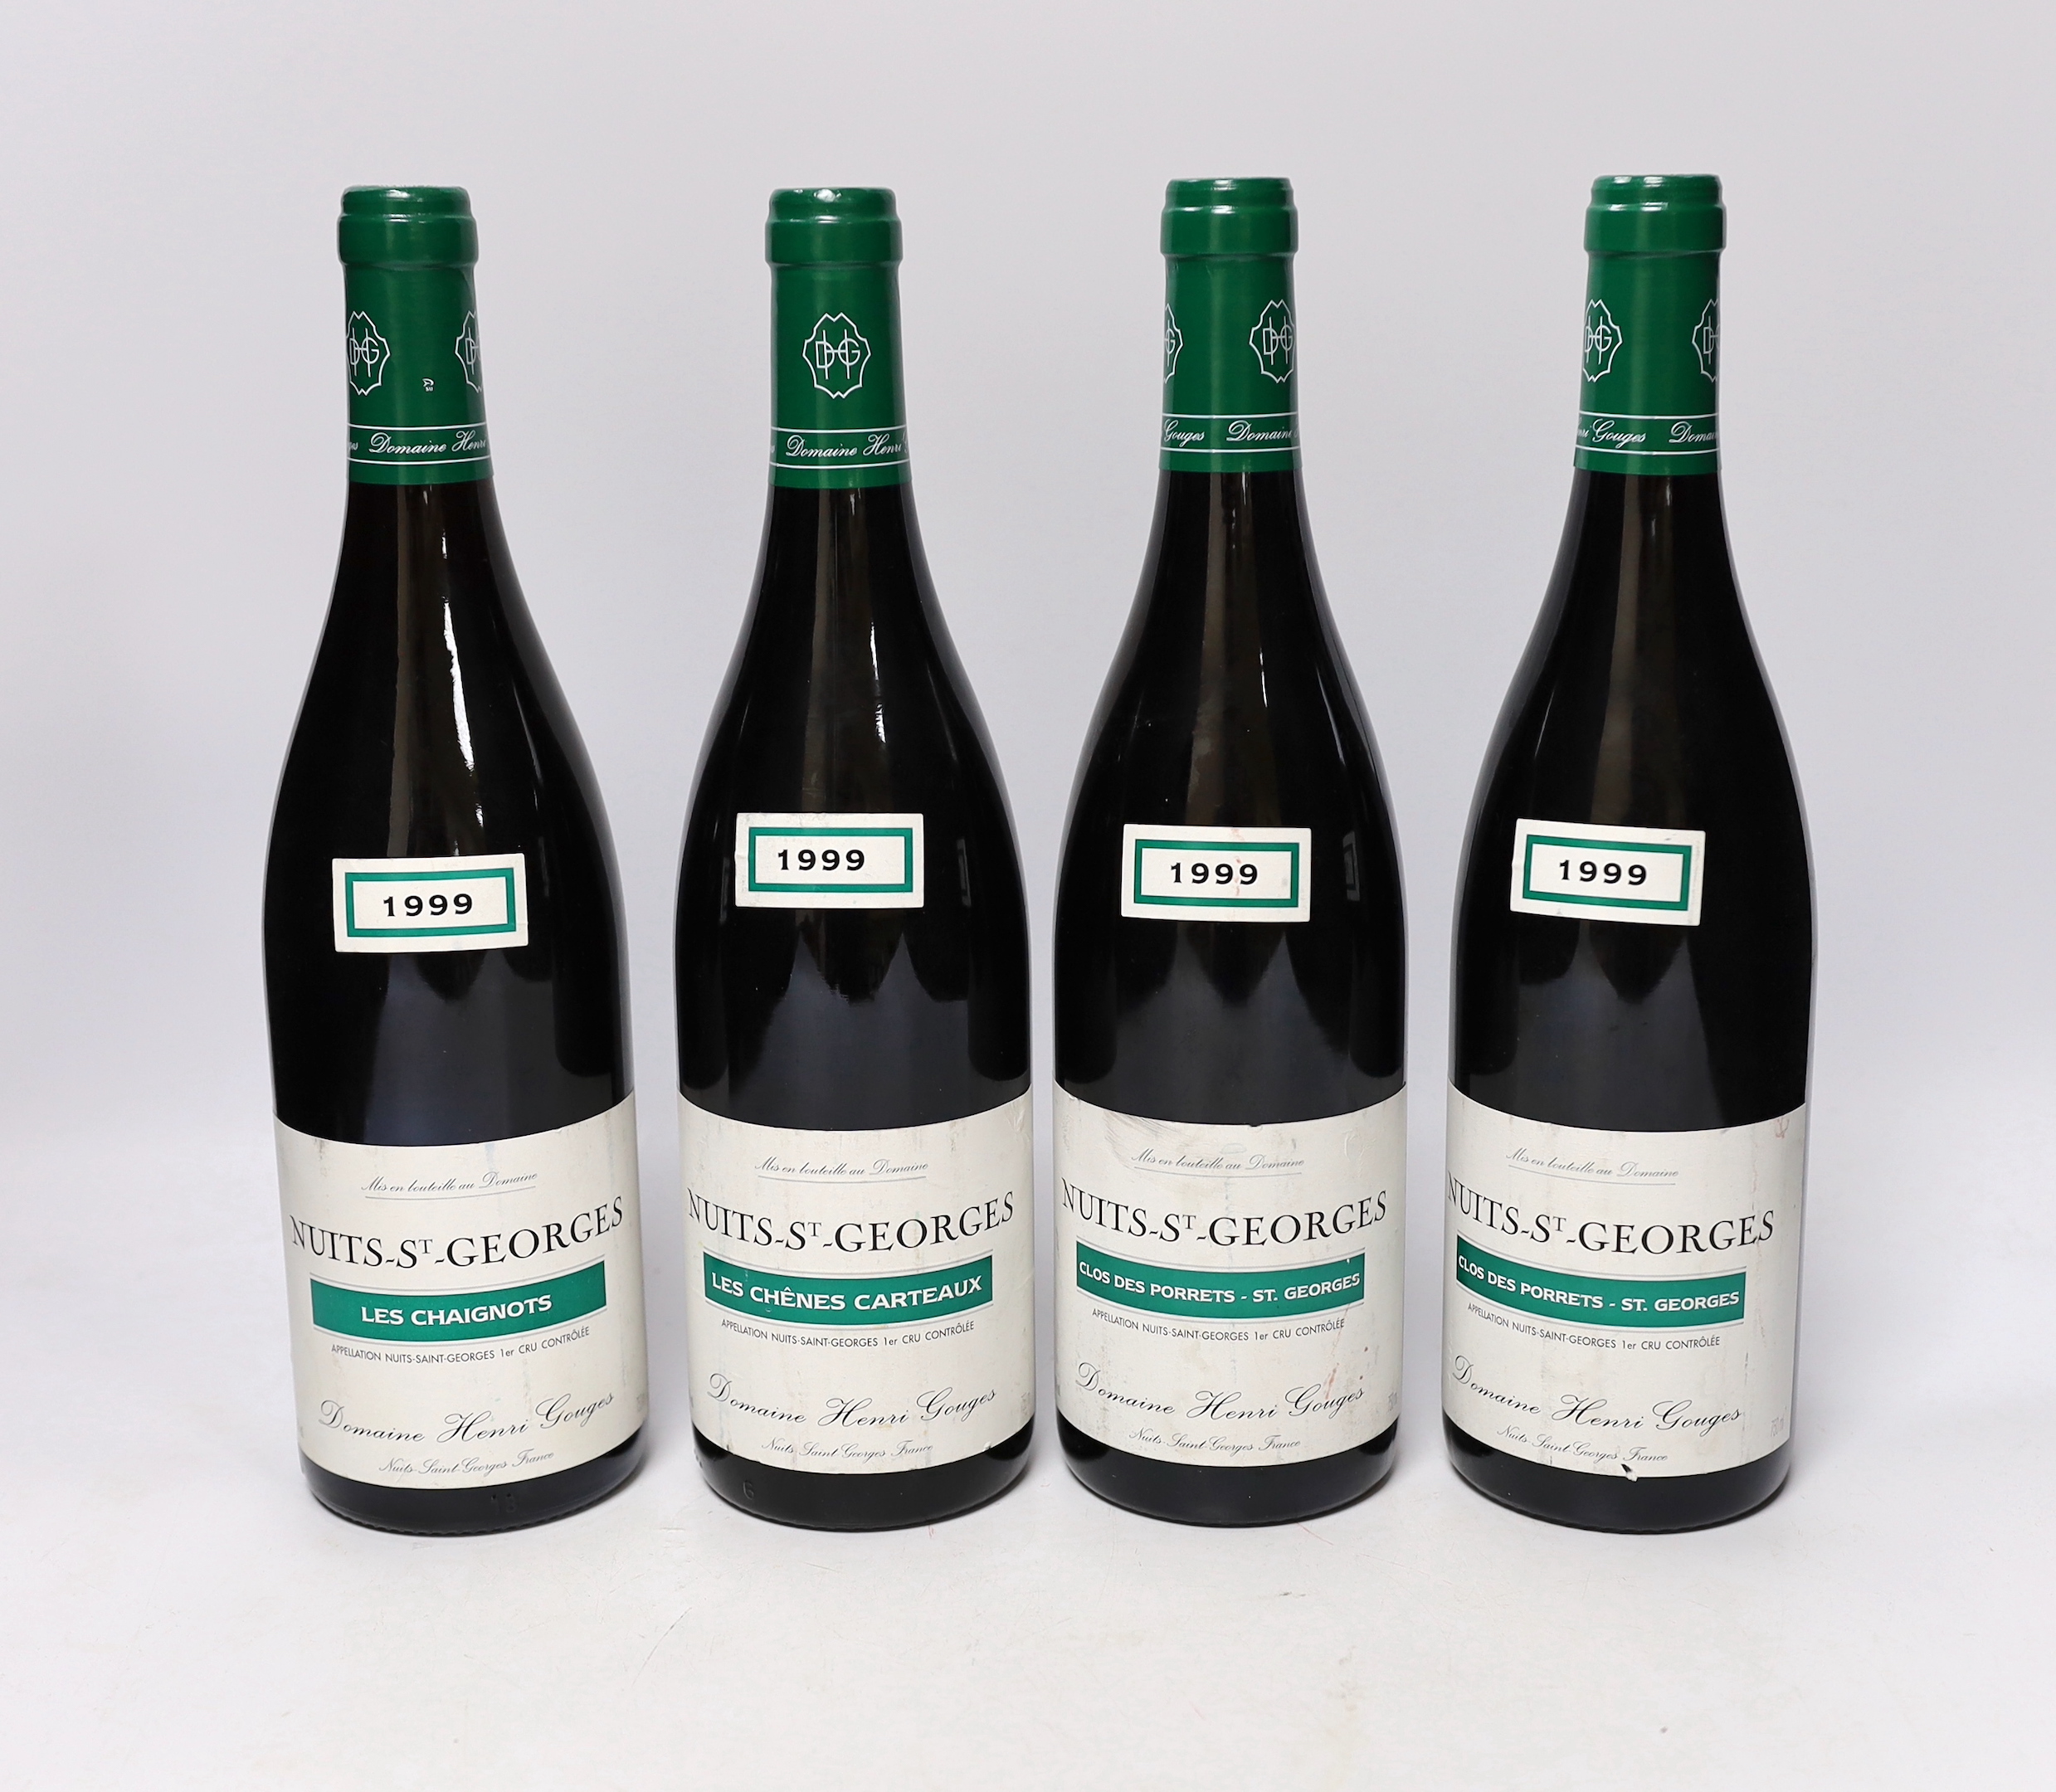 Four bottles of 1999 Nuits St Georges Les Chaignots Domaine Henri Gouges